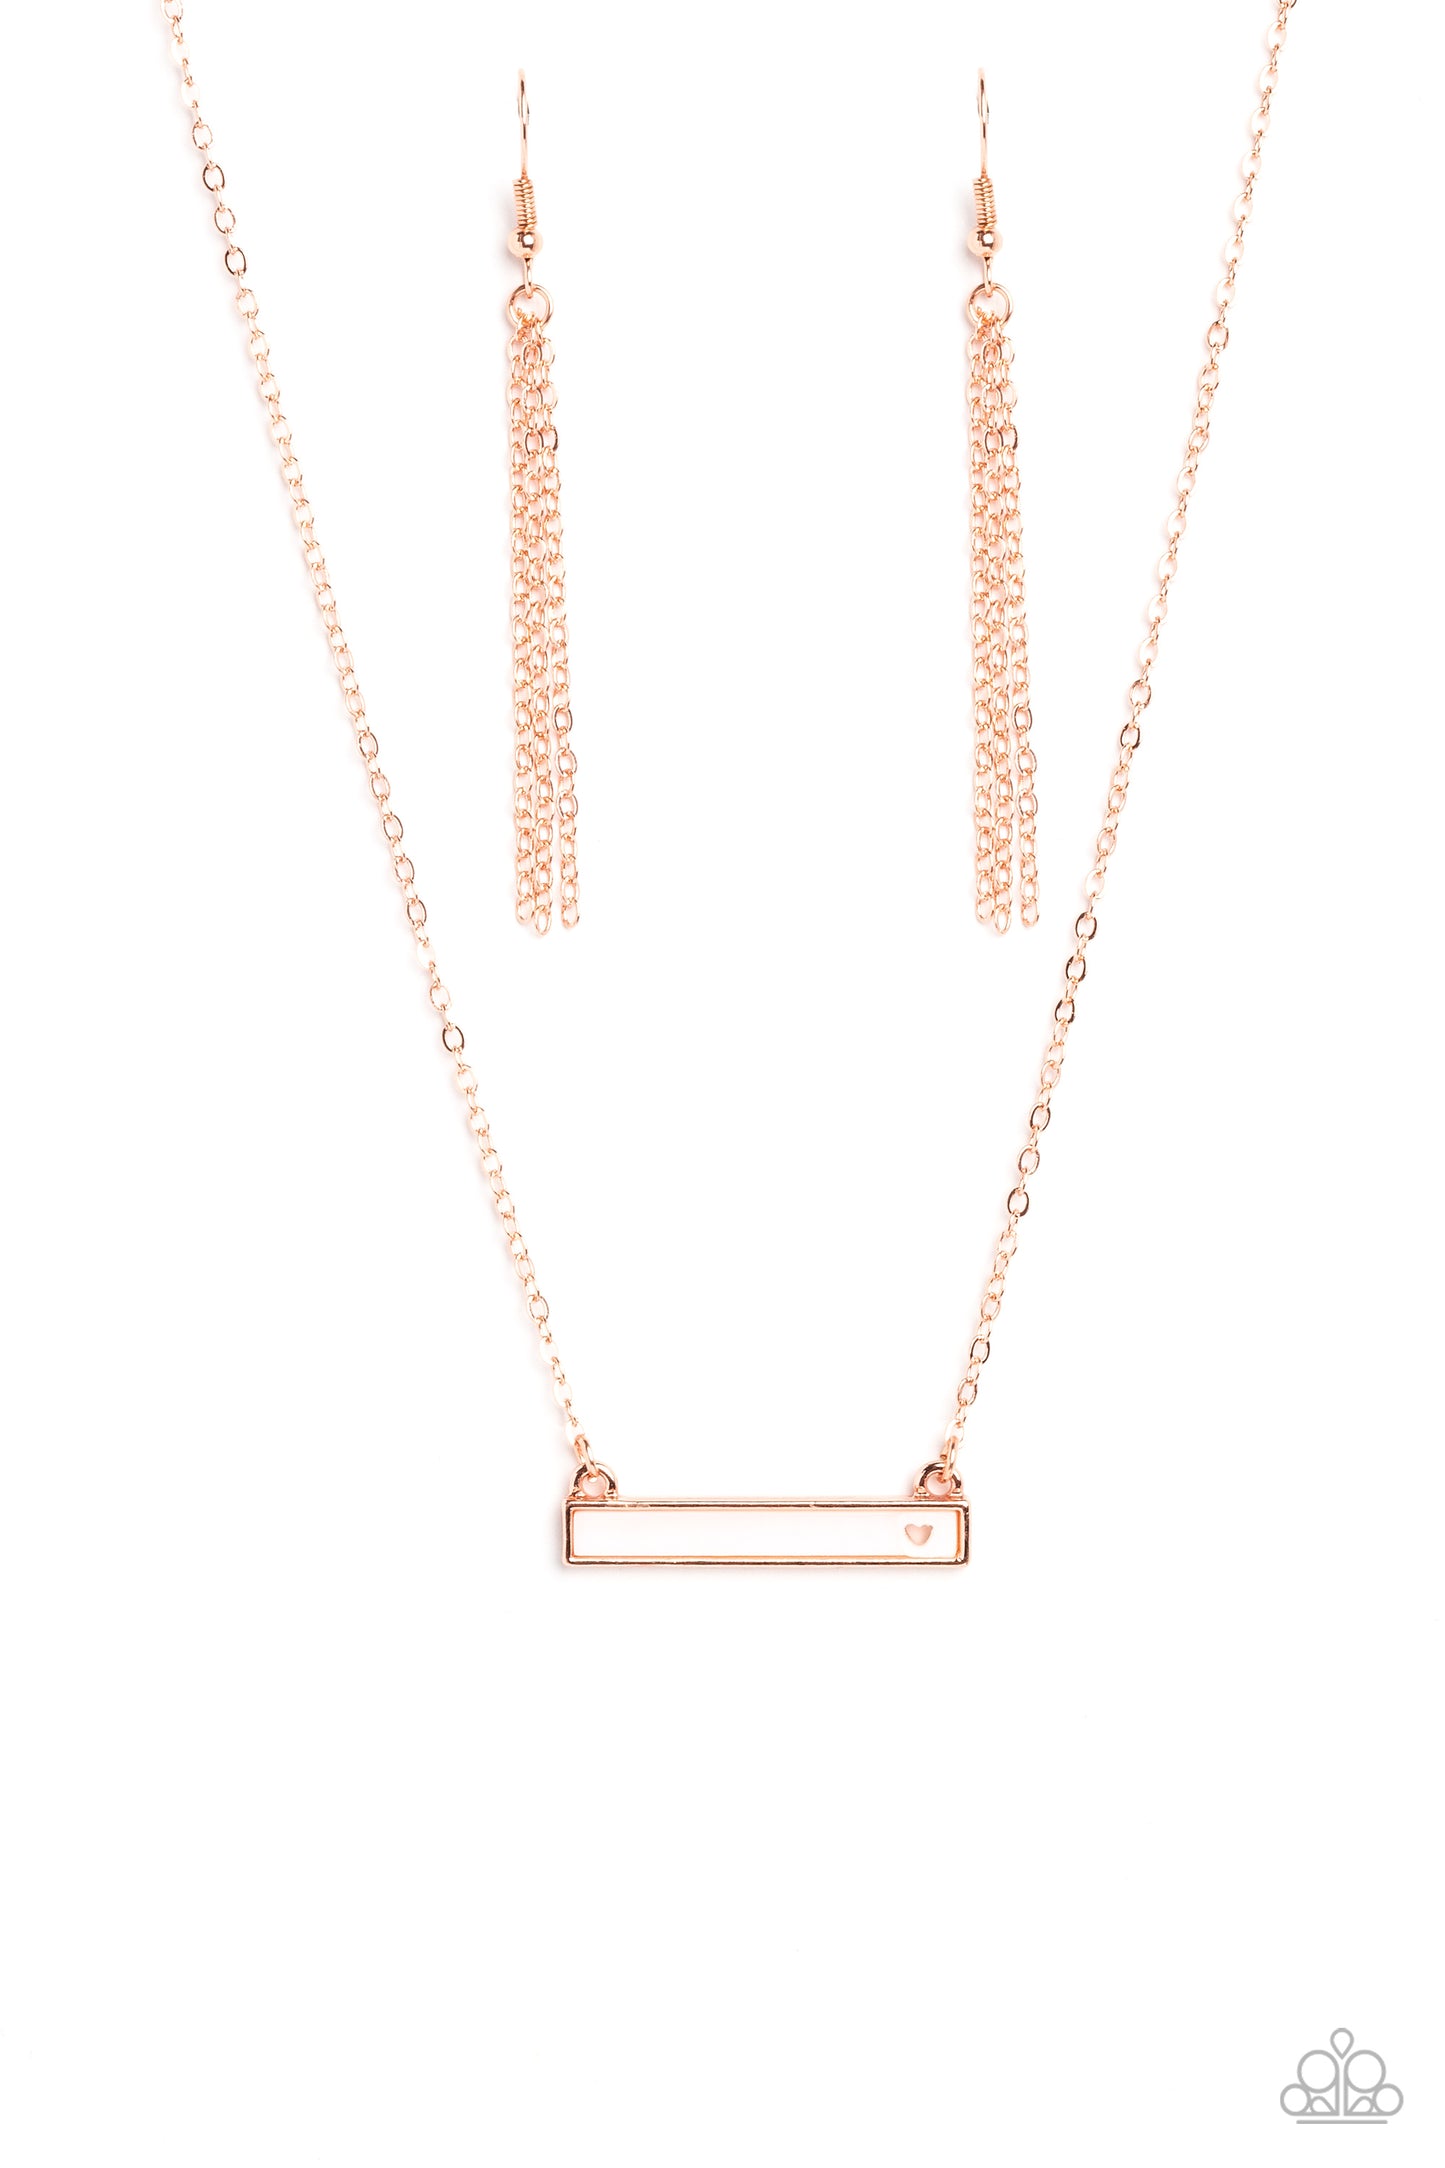 Glitzy Gusto Copper Necklace - Jewelry by Bretta